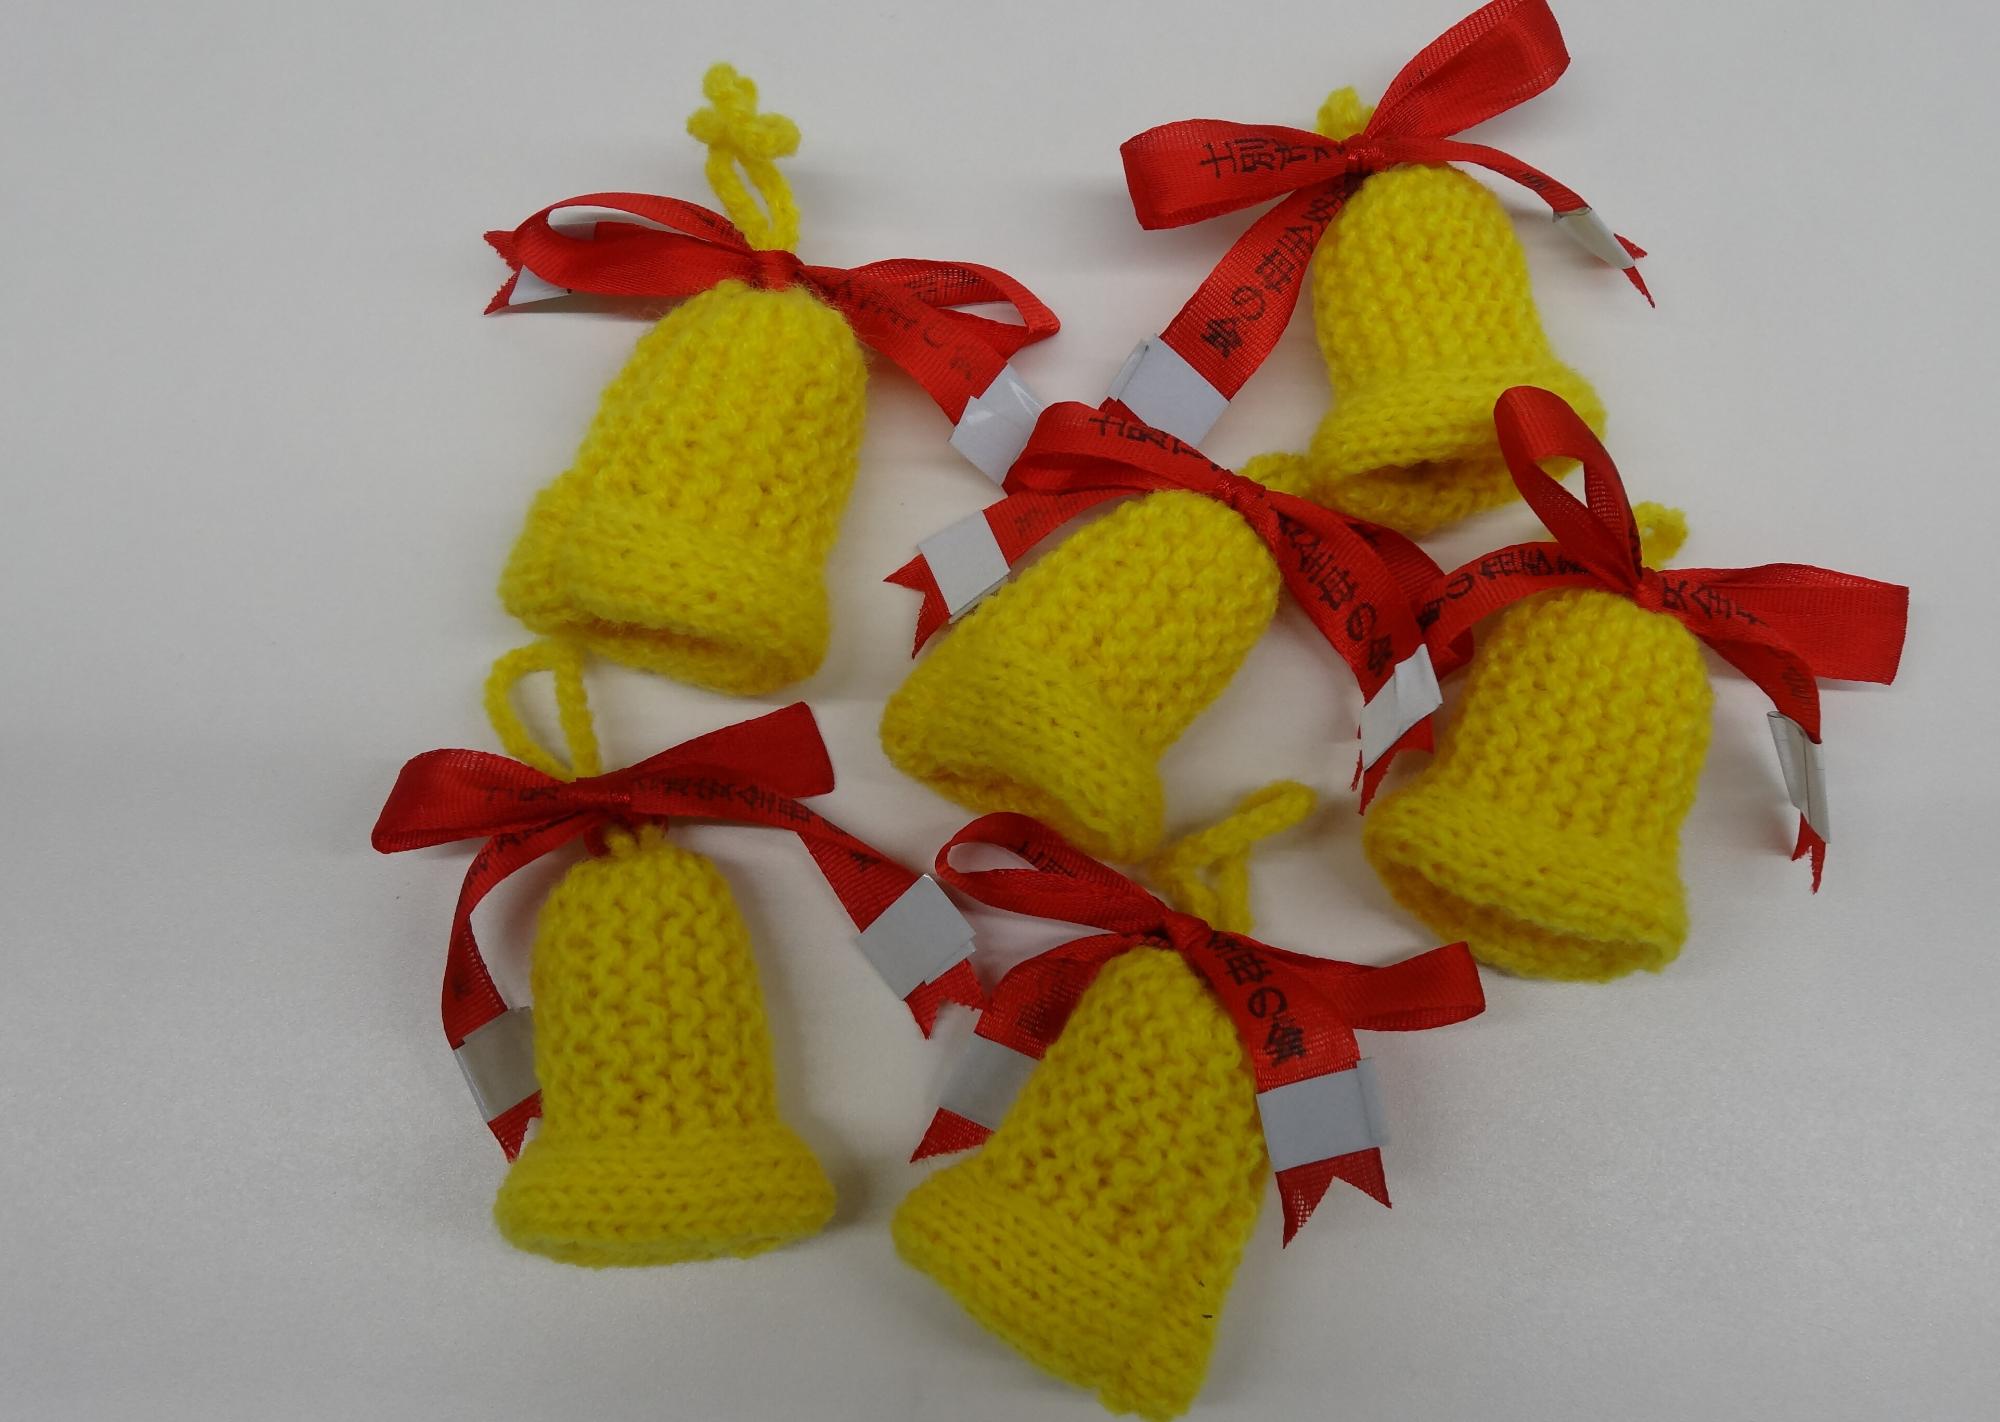 交通安全母の会が新入学児童の交通安全を願い、ランドセルに付ける黄色の毛糸で編んだ交通安全愛の鈴の写真